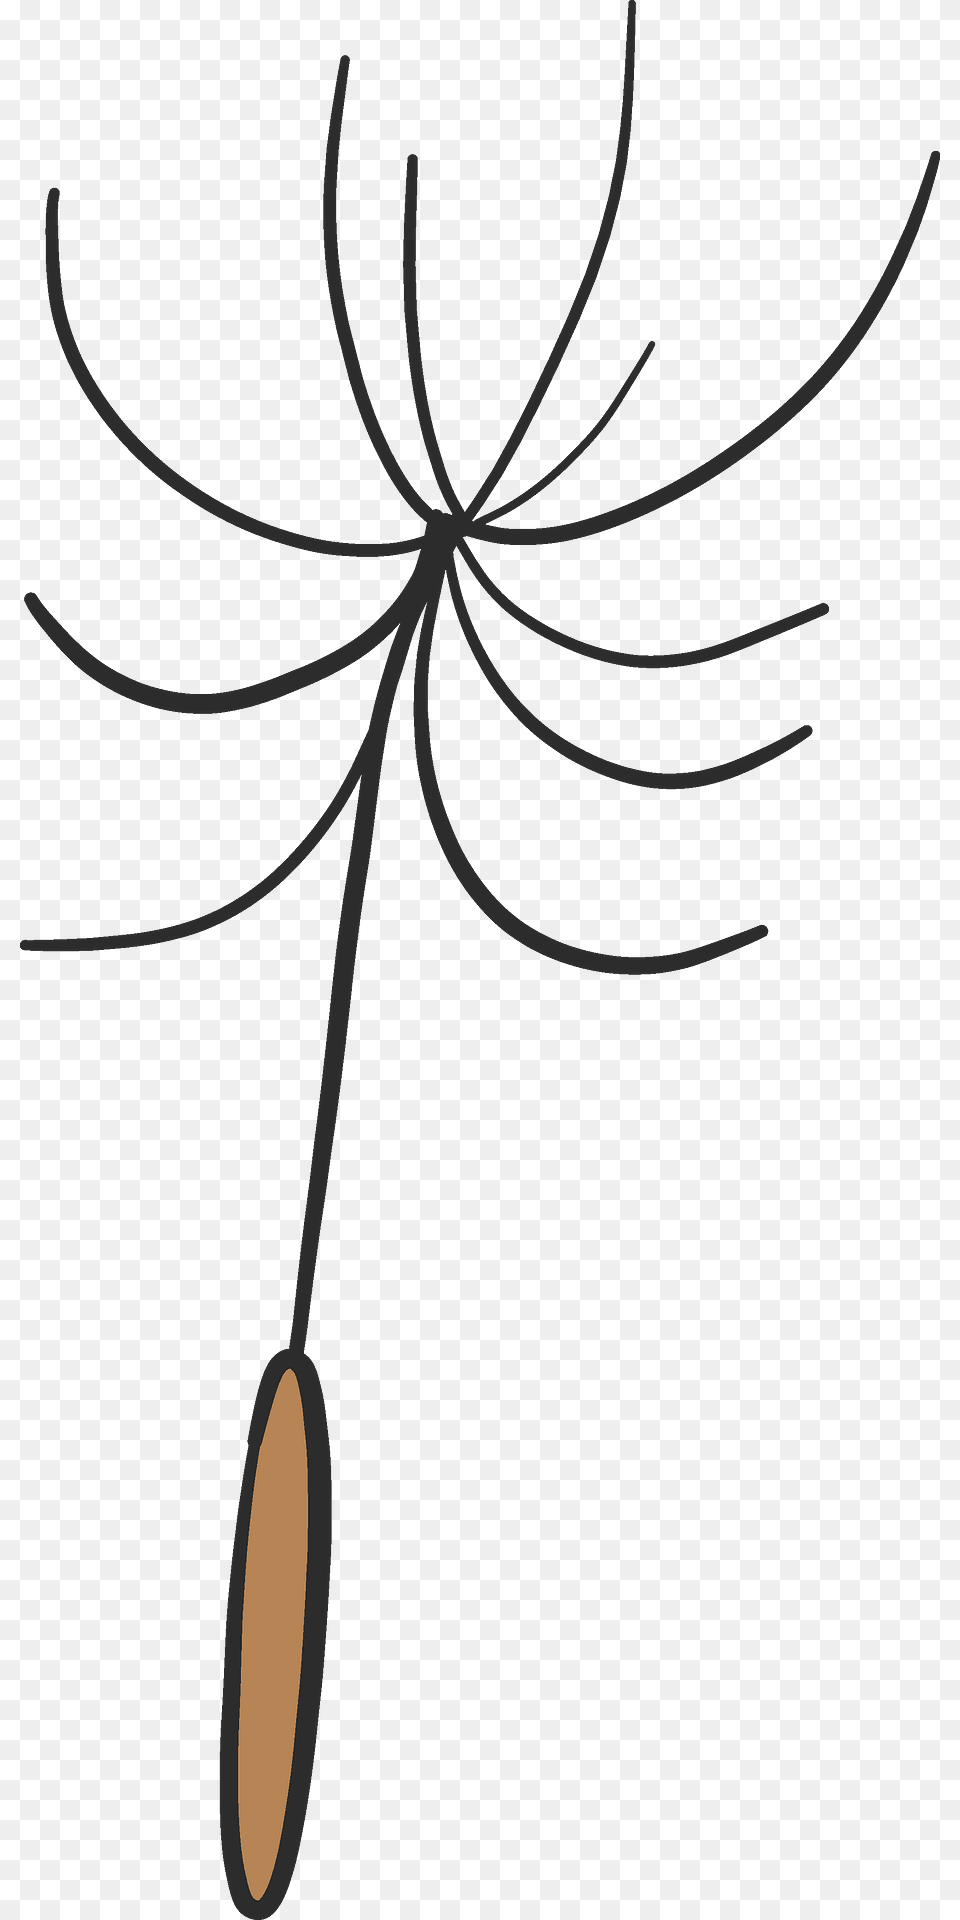 Dandelion Parachute Clipart, Flower, Plant, Bow, Weapon Free Transparent Png